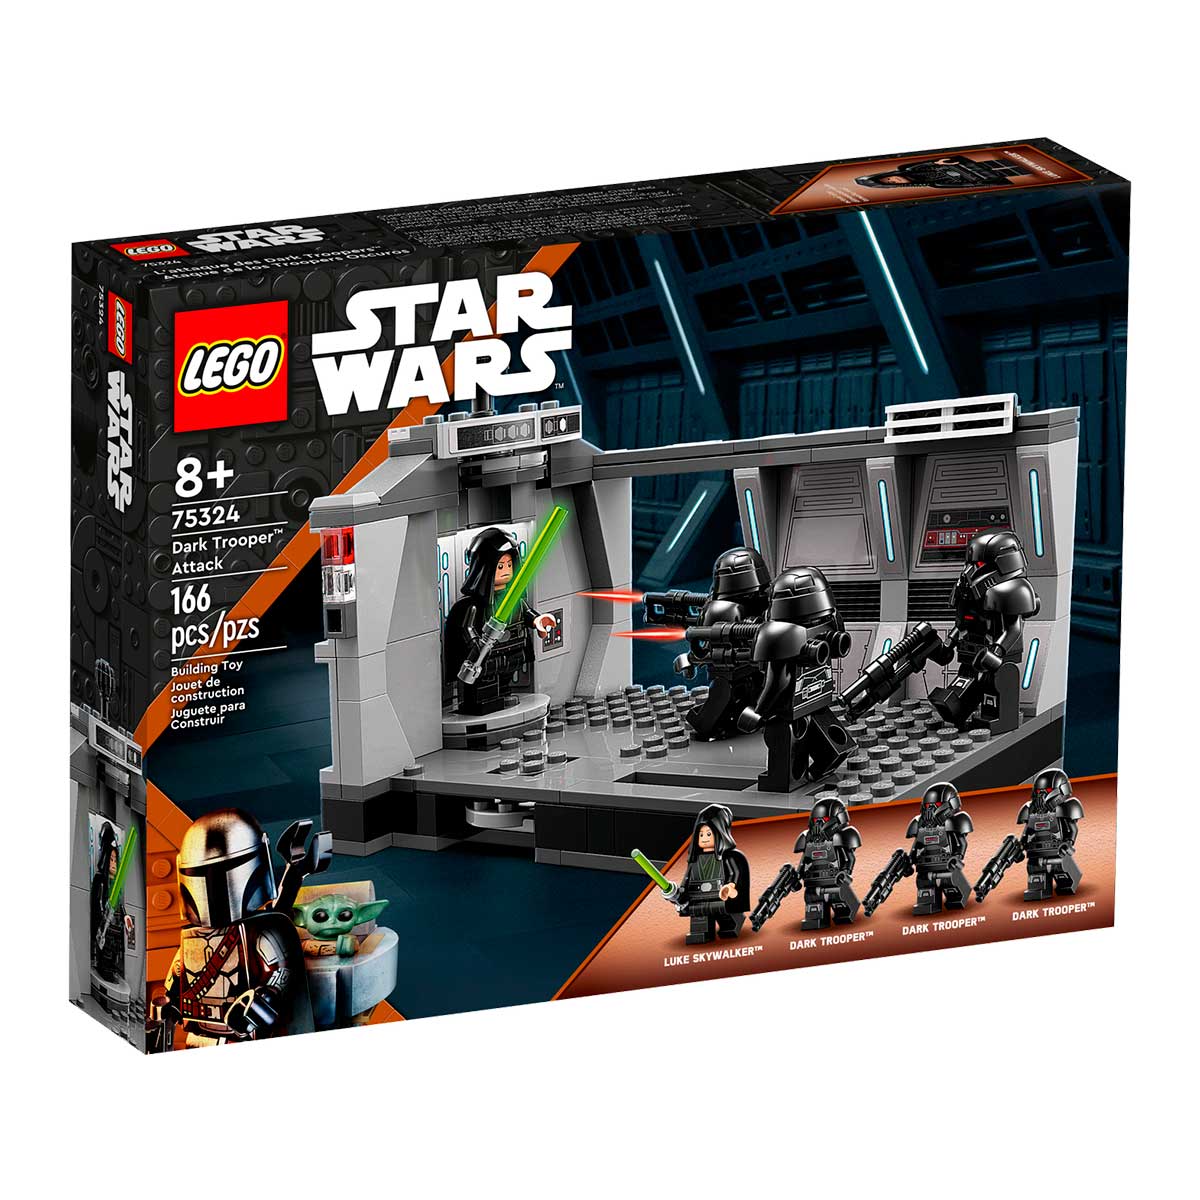 LEGO Star Wars - Ataque de Dark Trooper™ - 75324